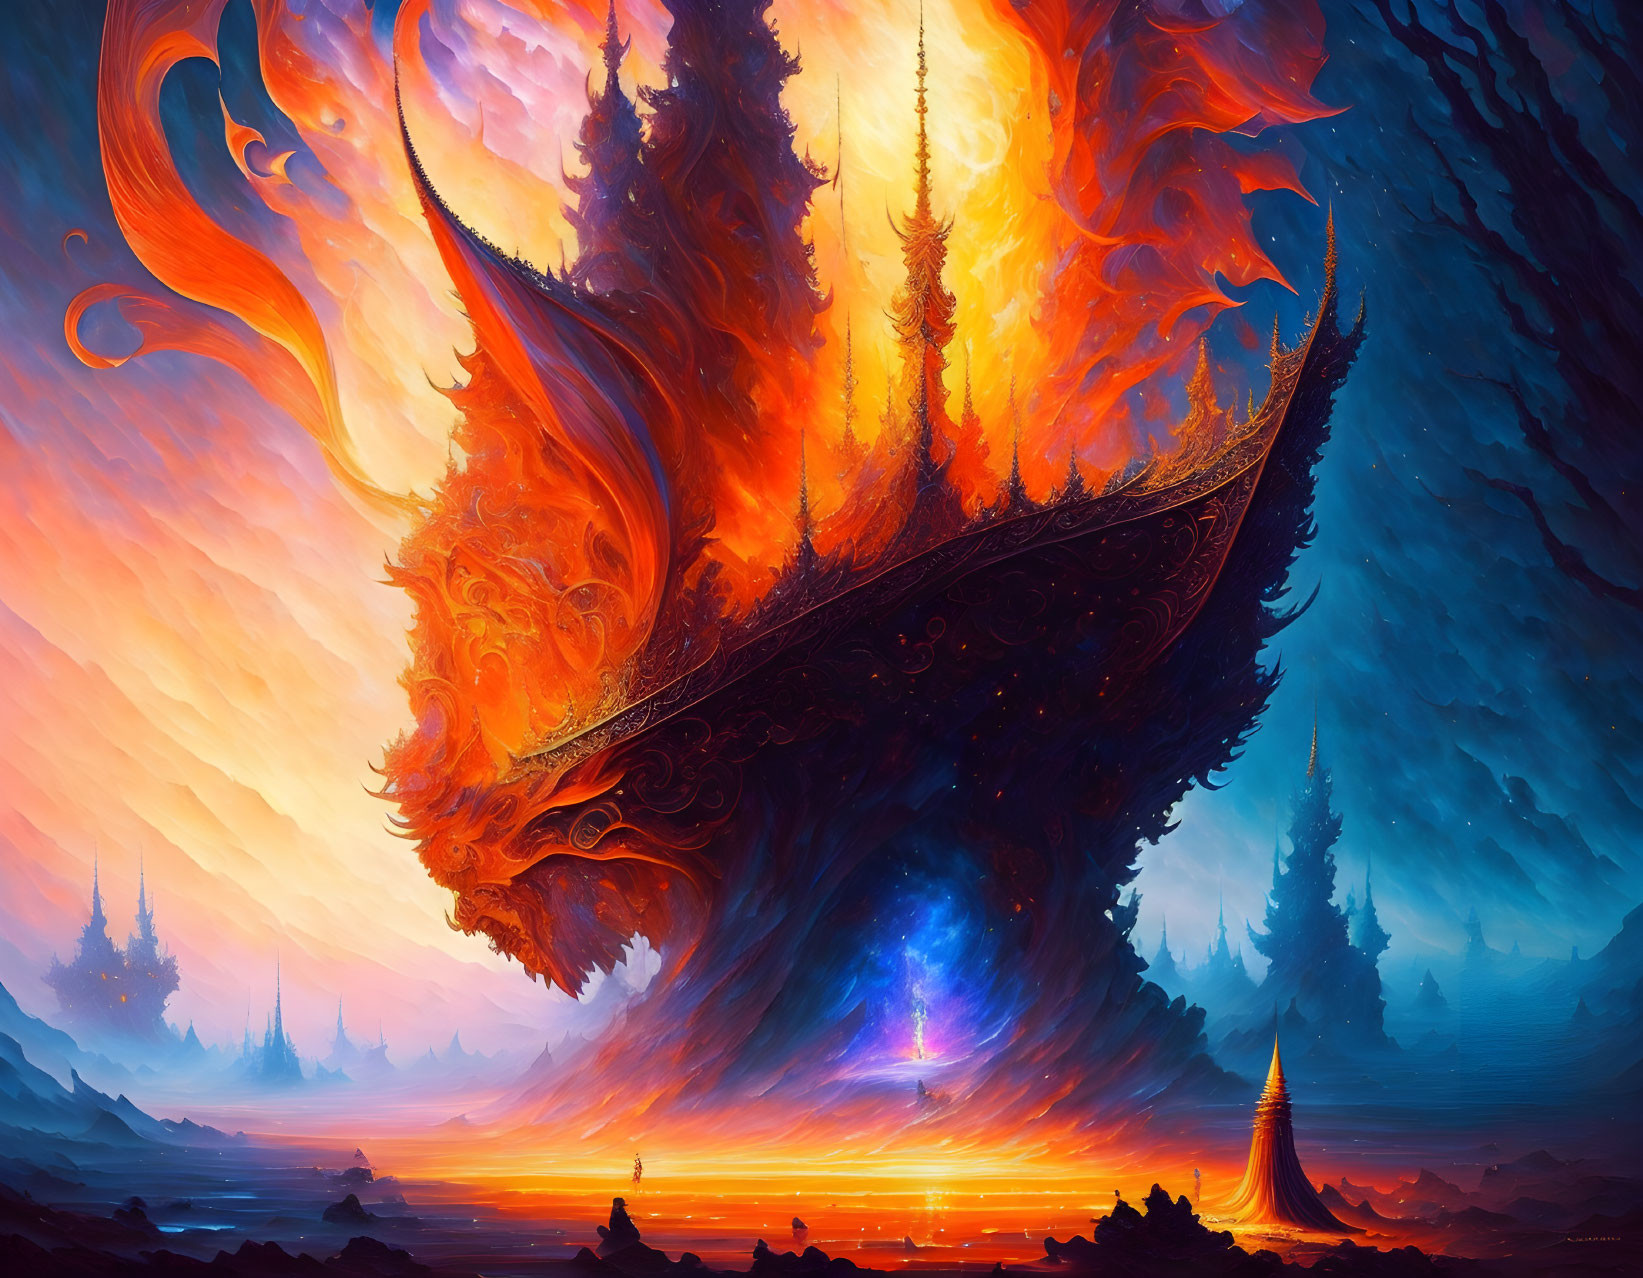 Fiery phoenix rising in mystical forest scene